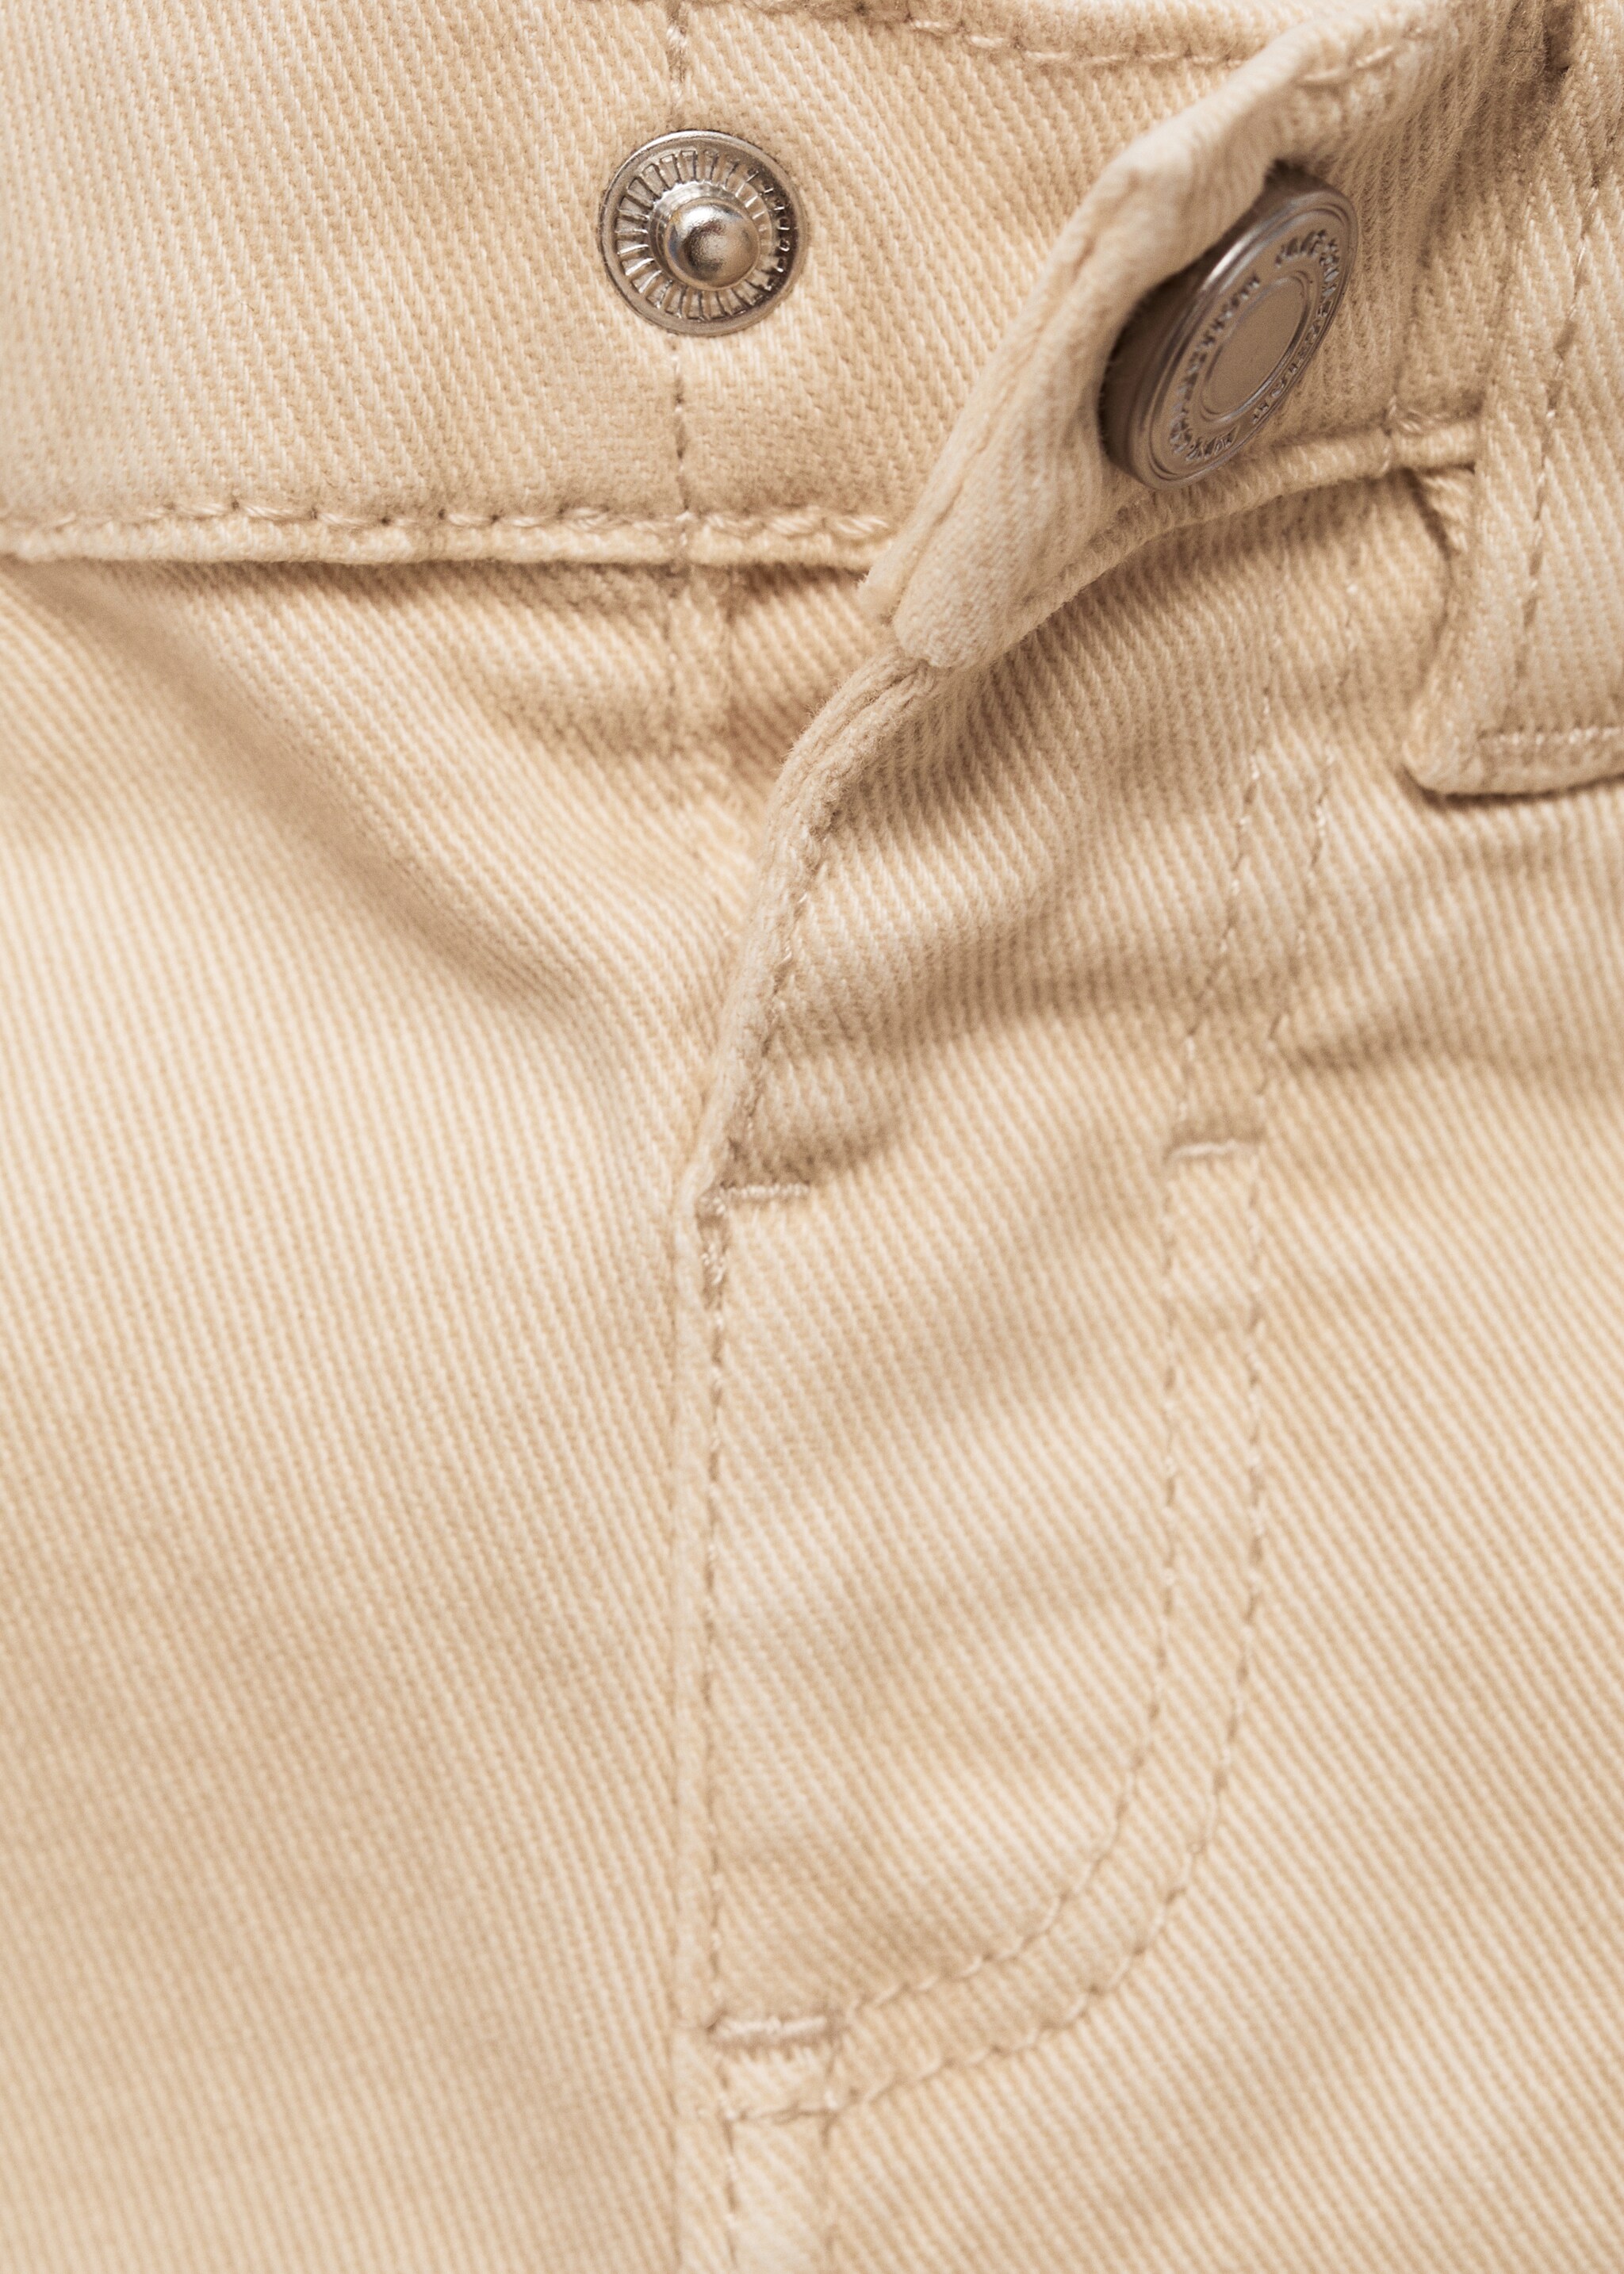 Pantalón recto algodón - Detalle del artículo 8